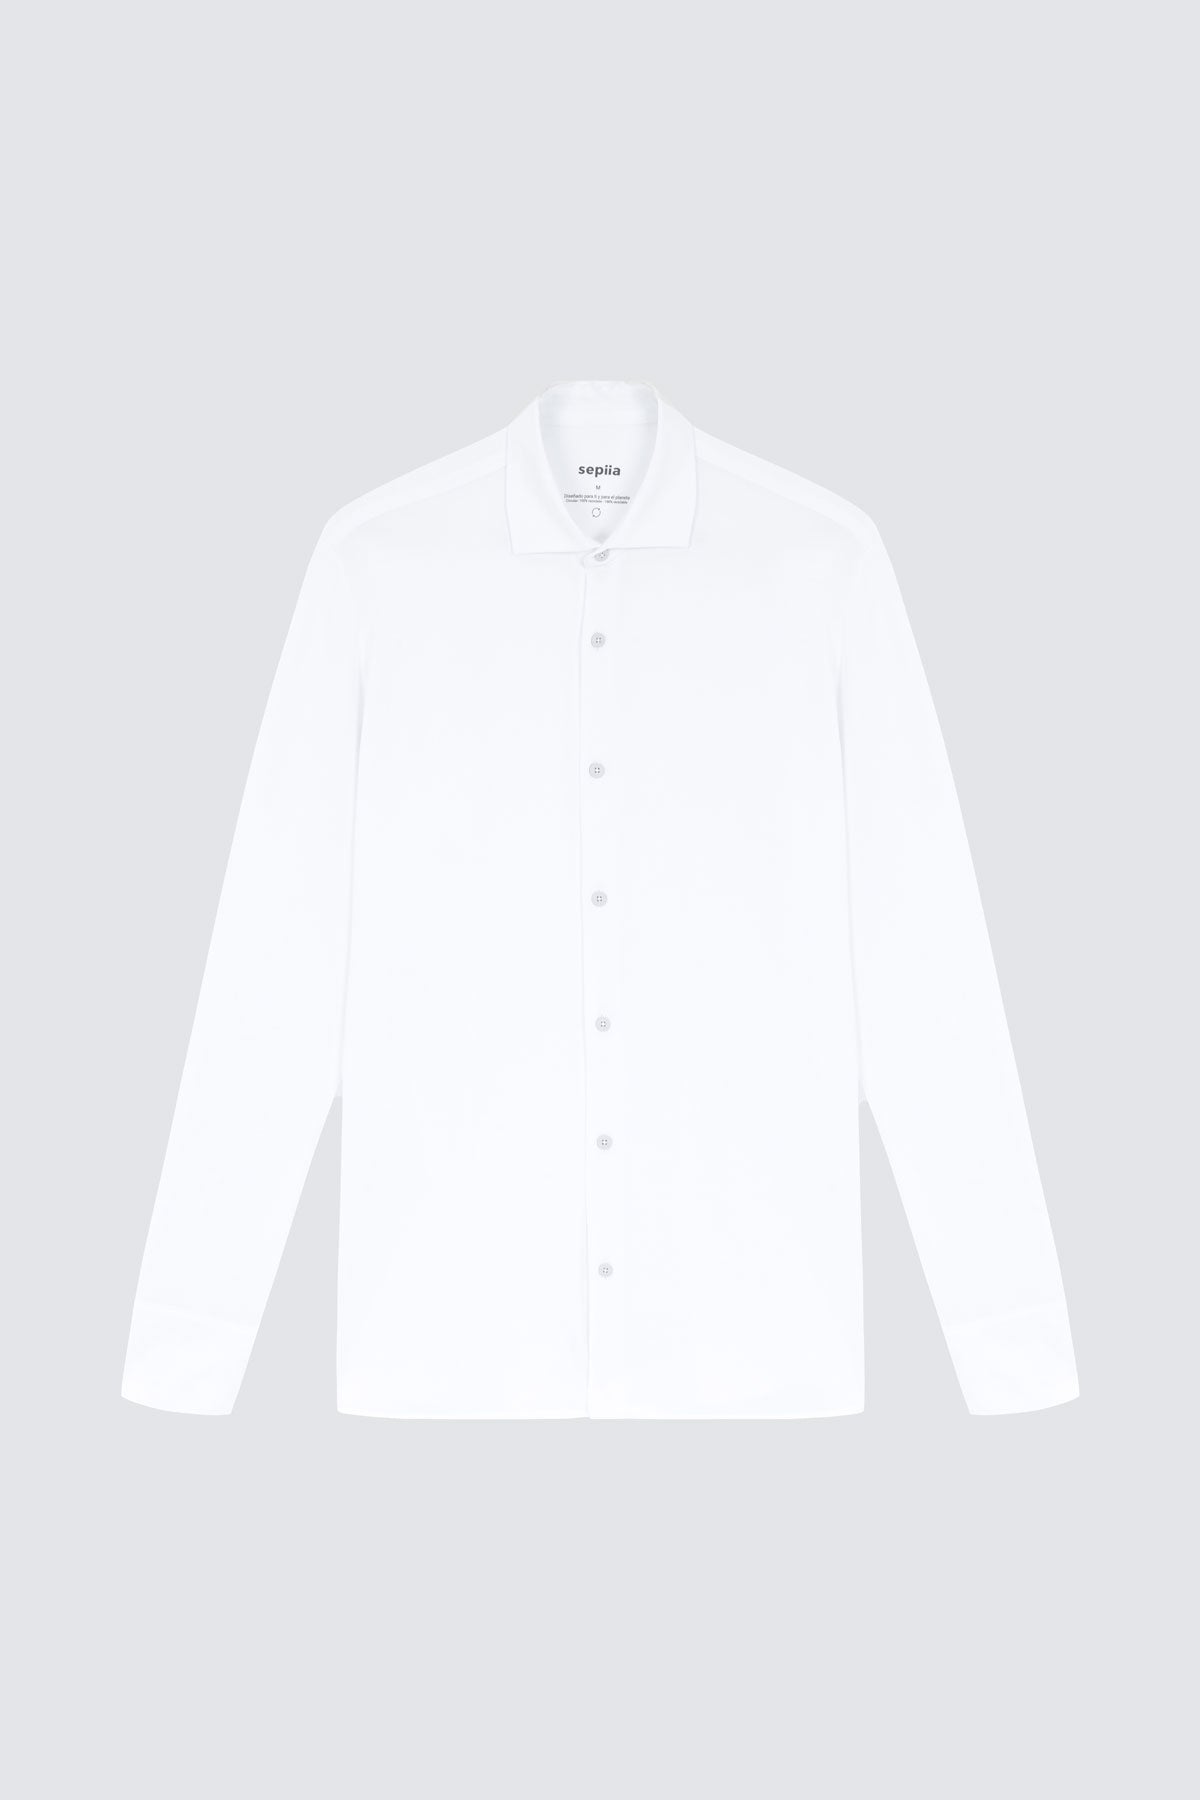 Camisa de vestir blanca de manga larga slim para hombre Sepiia: Camisa de vestir blanca de manga larga slim para hombre sin arrugas, antimanchas, perfecta para traje o americana. Foto prenda en plano